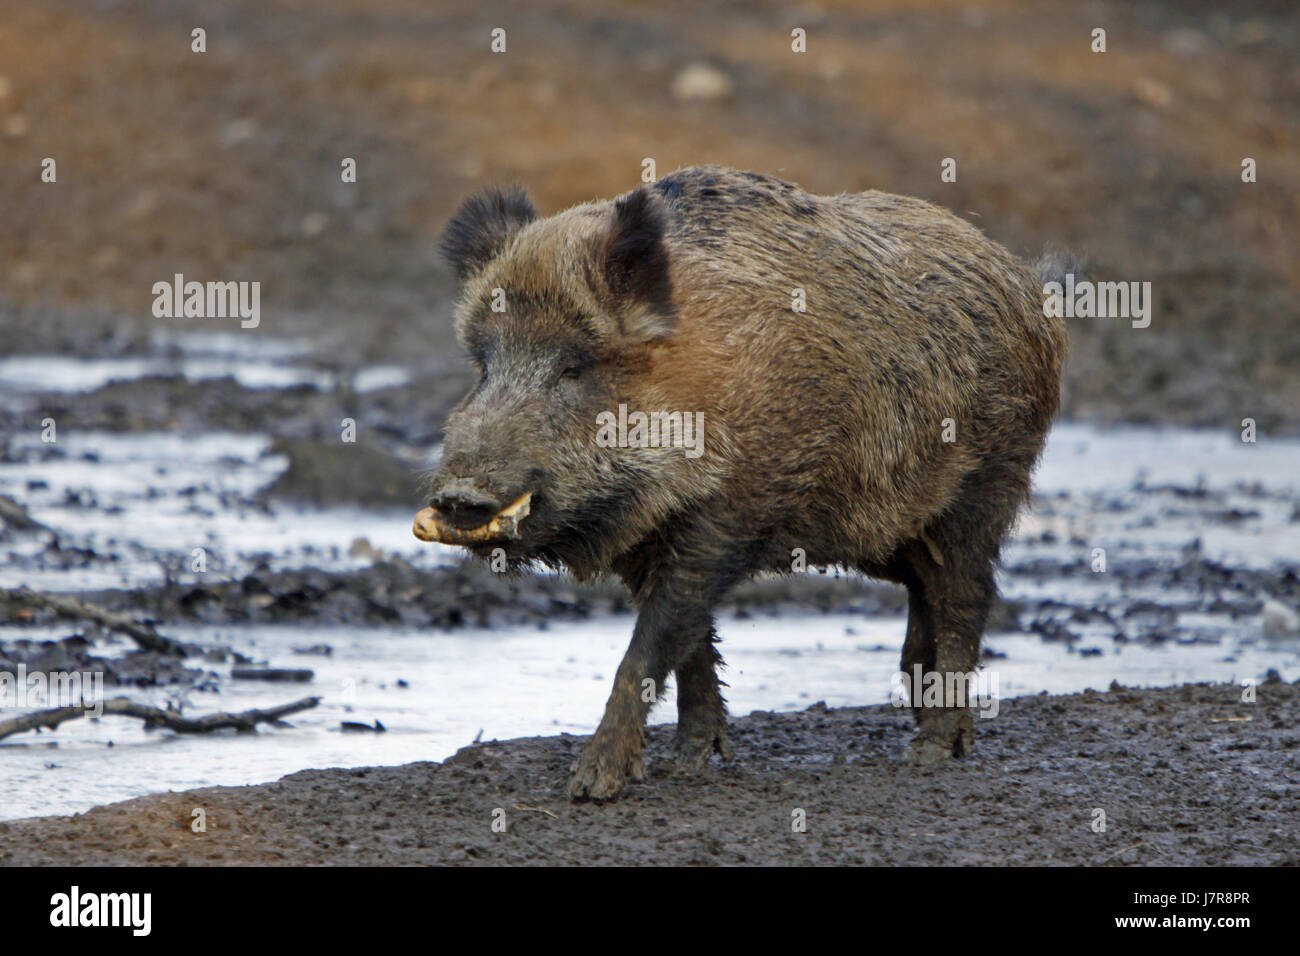 mammal wild wild boar pig wild animal wild boars mammal wild wild boar pig Stock Photo